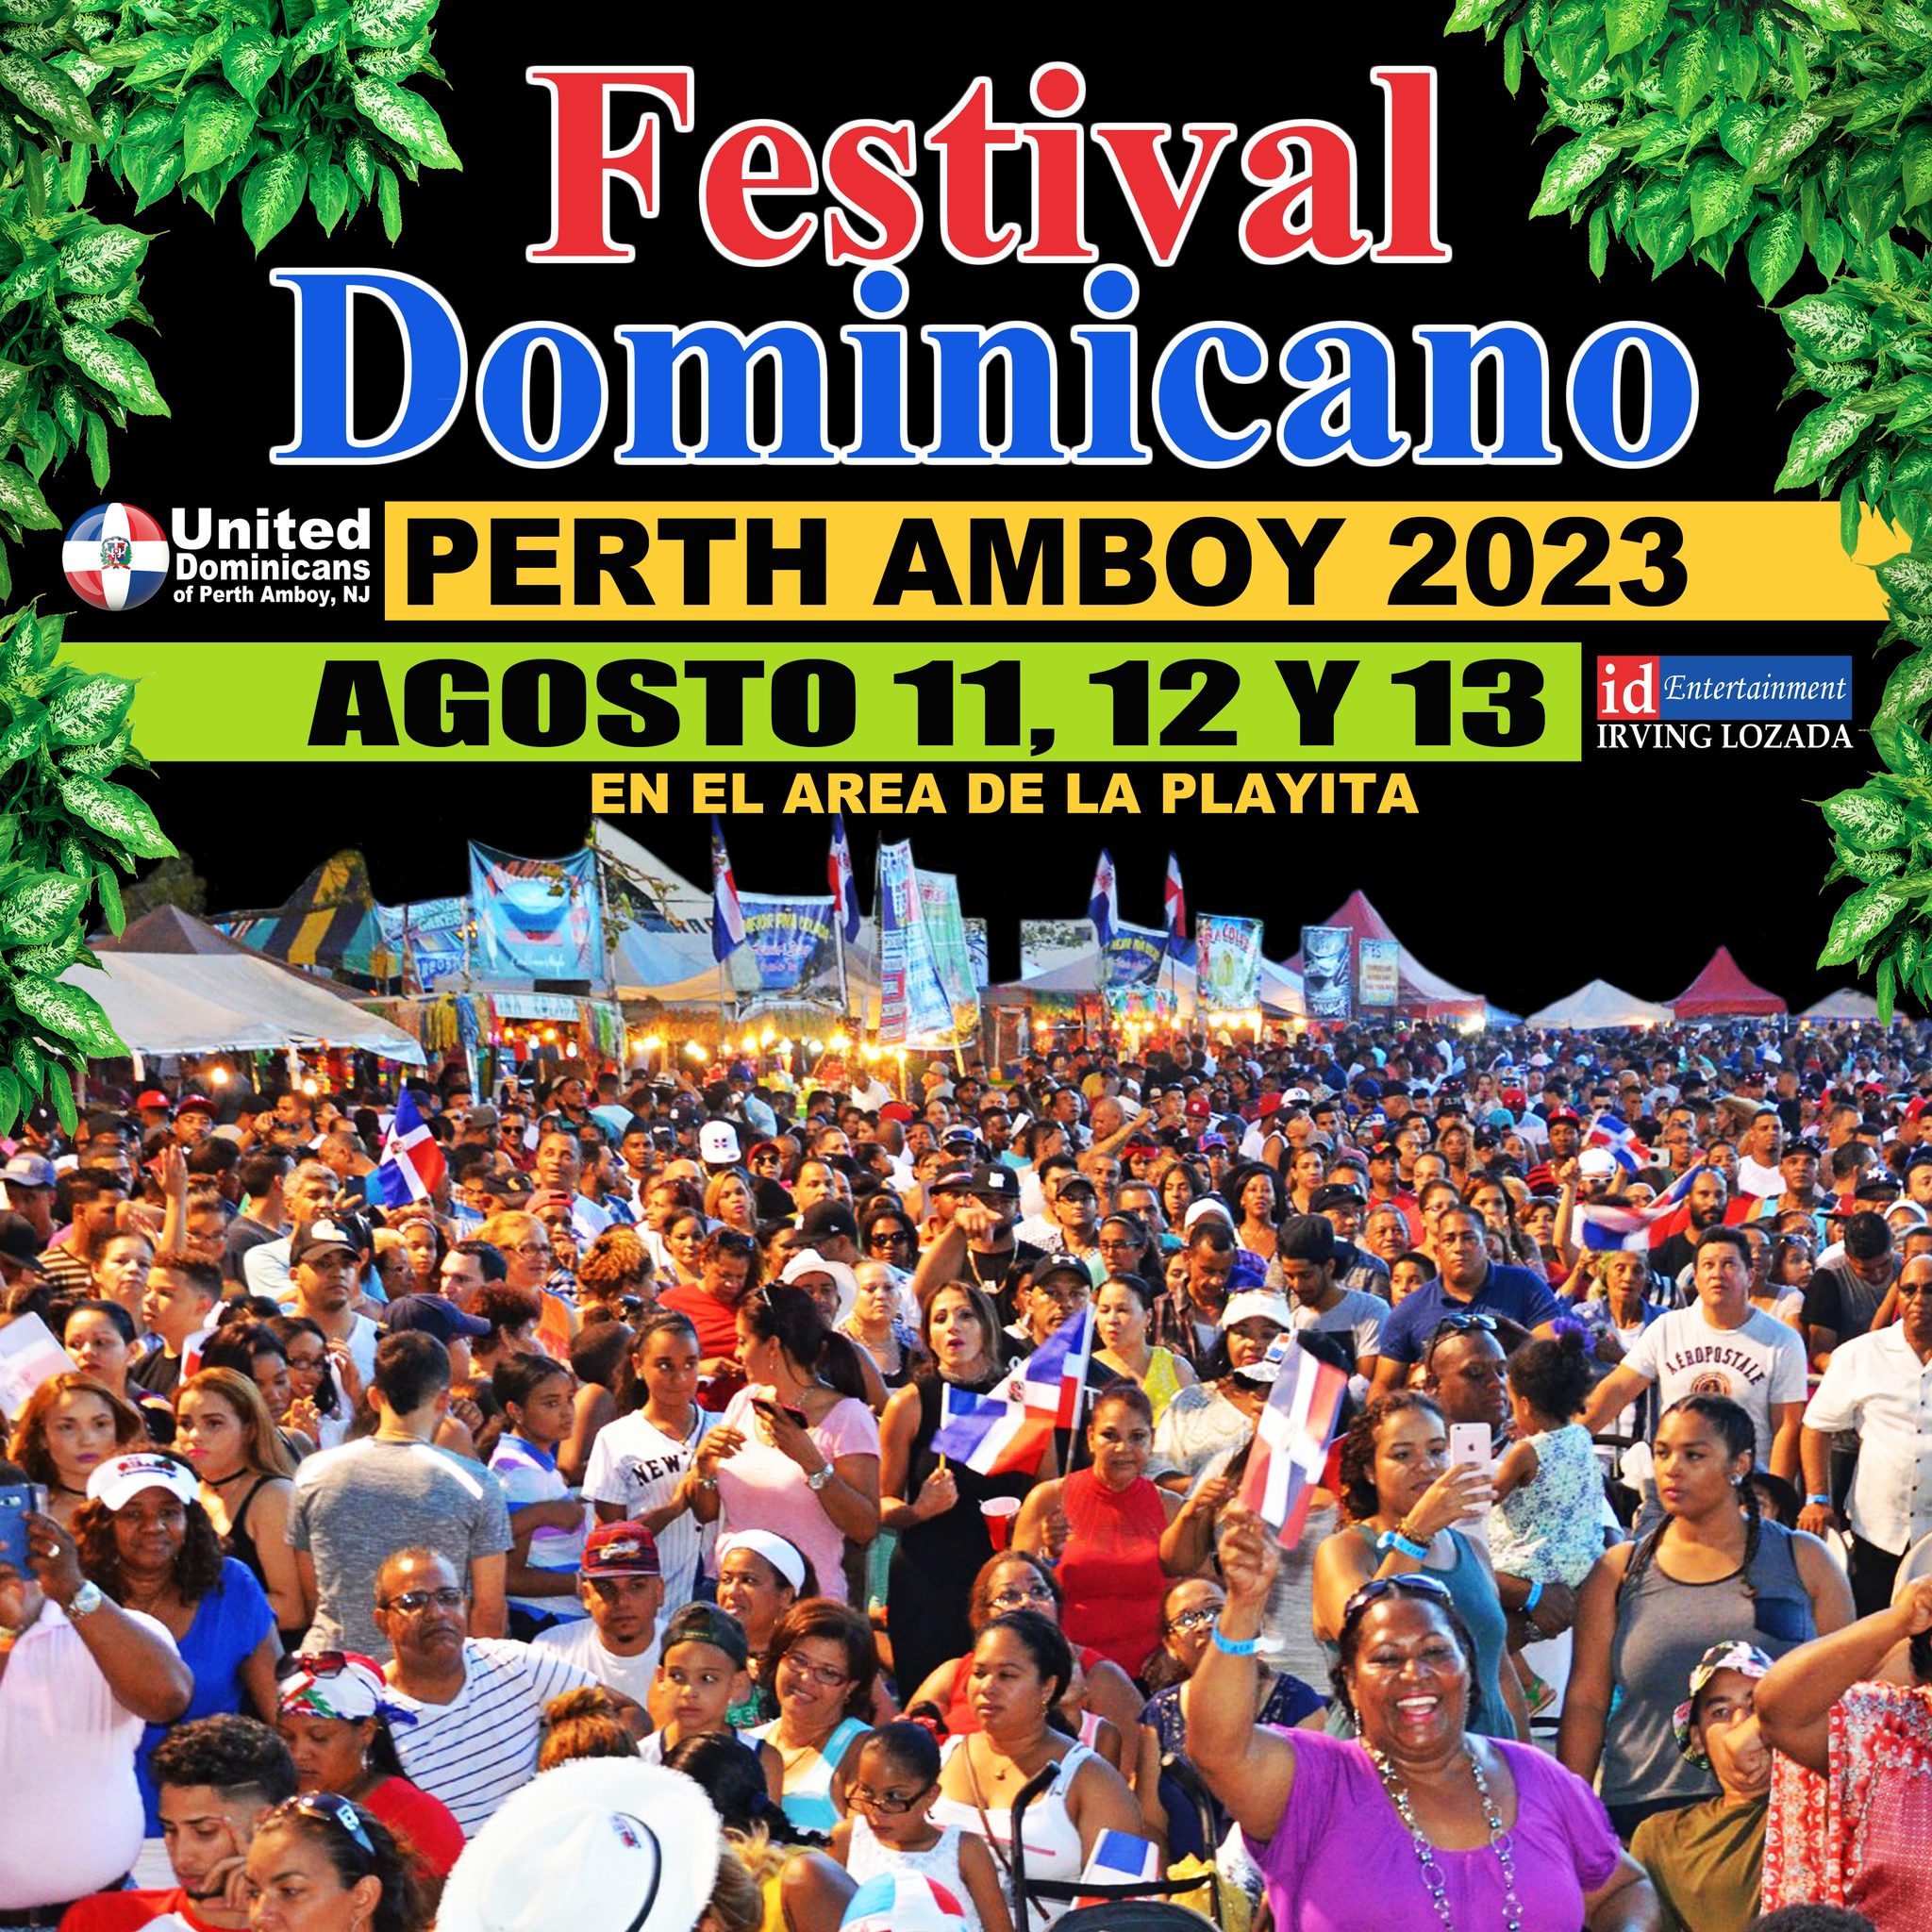 Perth Amboy Dominican Festival